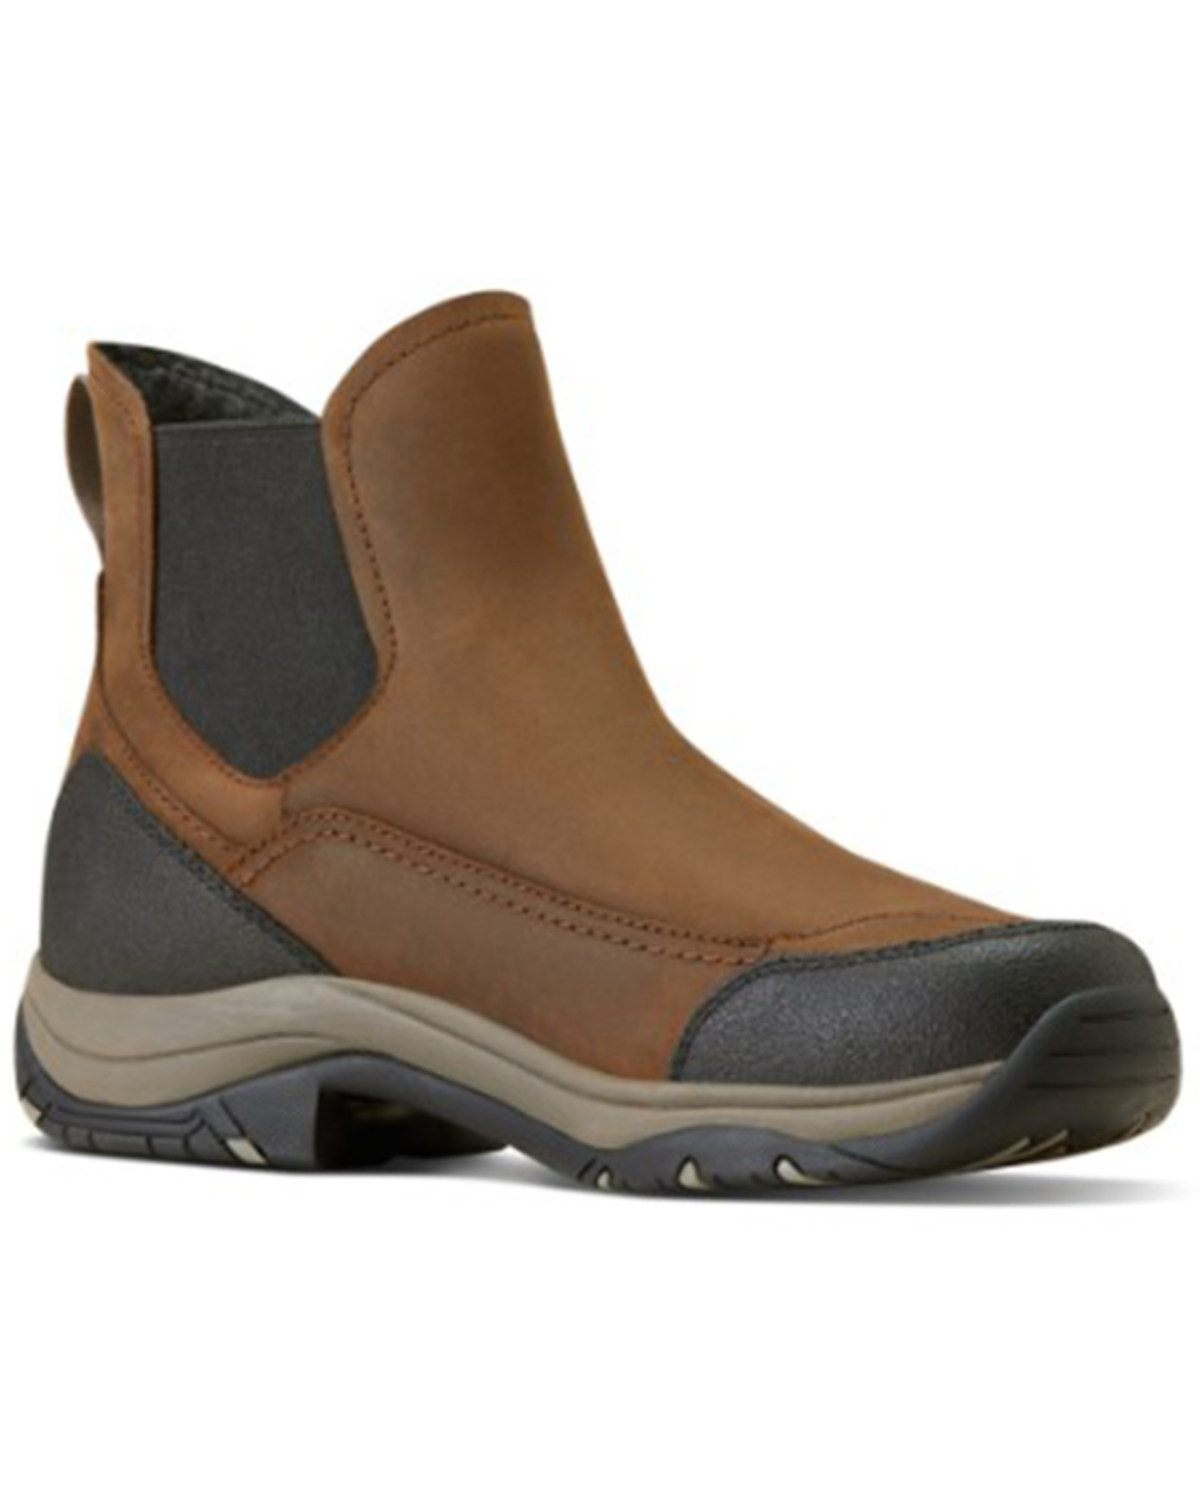 Ariat Men's Terrain Blaze Waterproof Boots - Round Toe